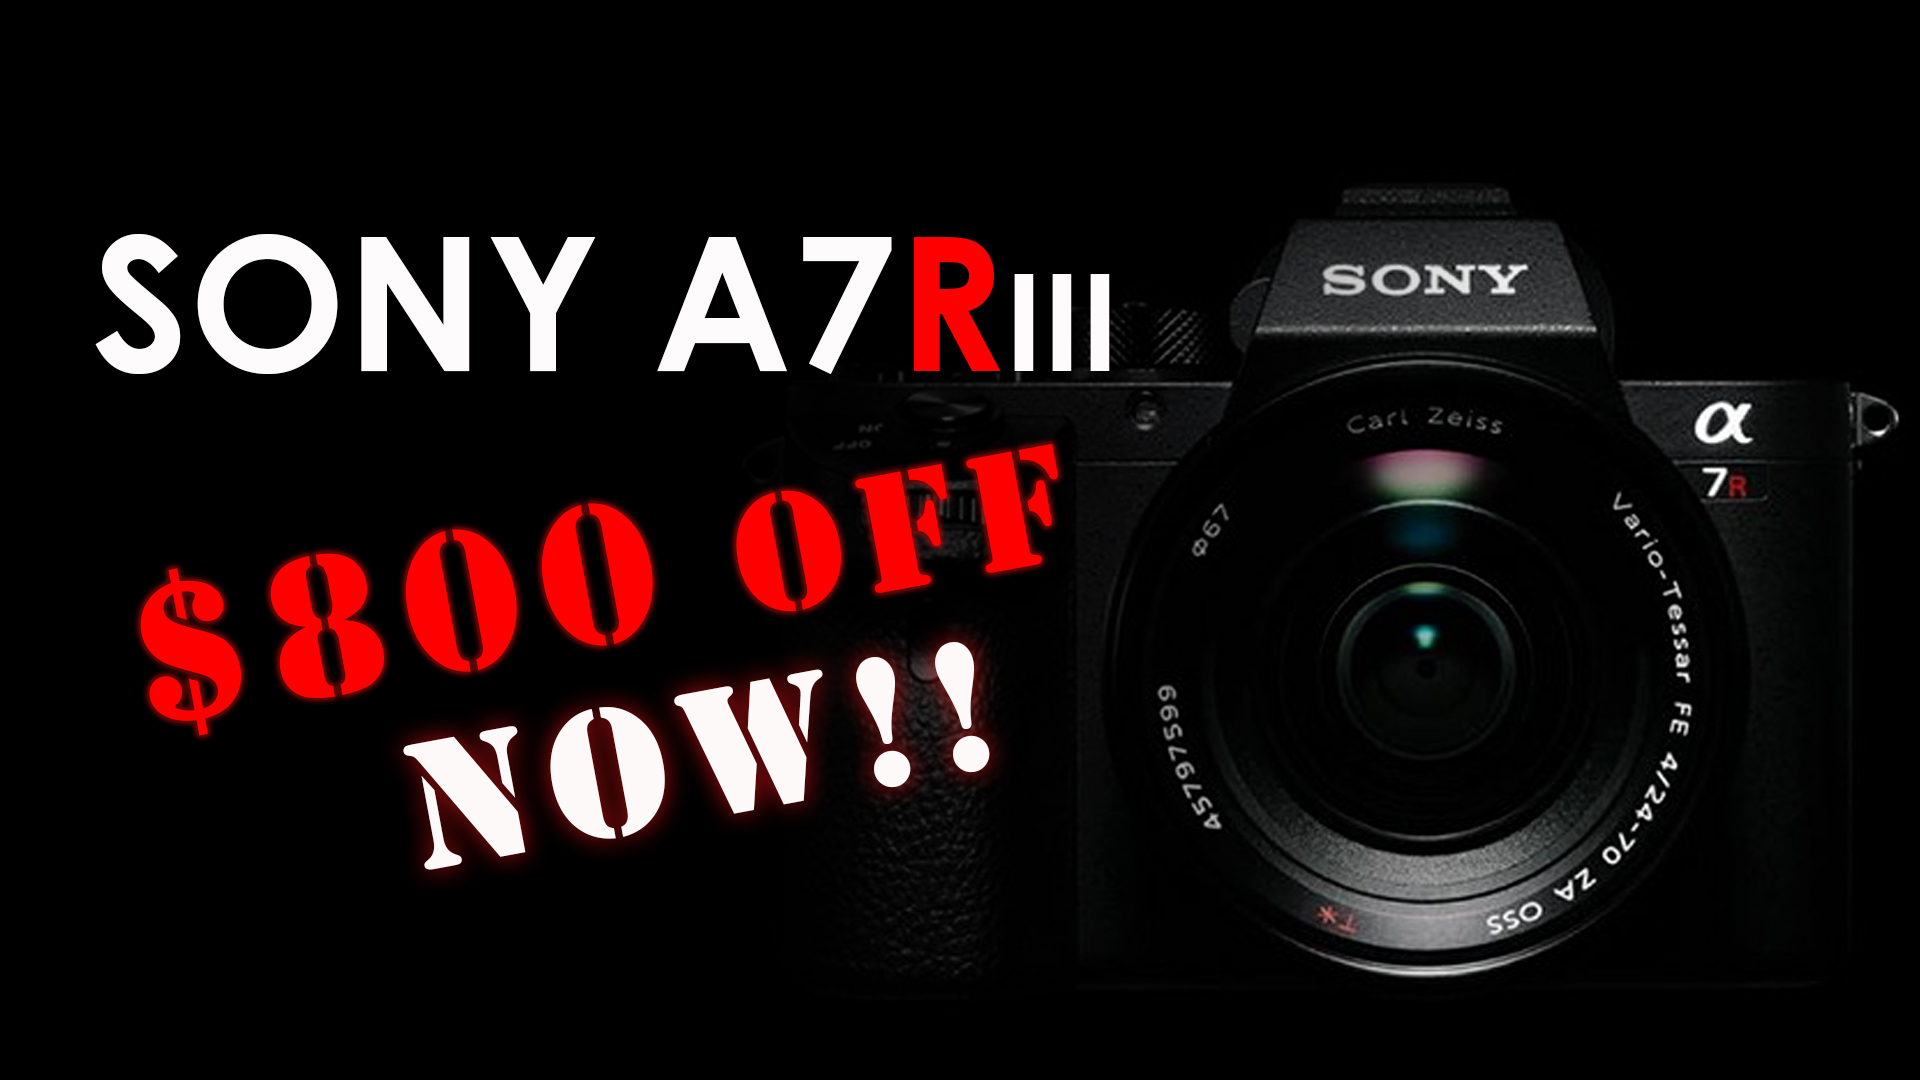 Sony A7Riii $800 off